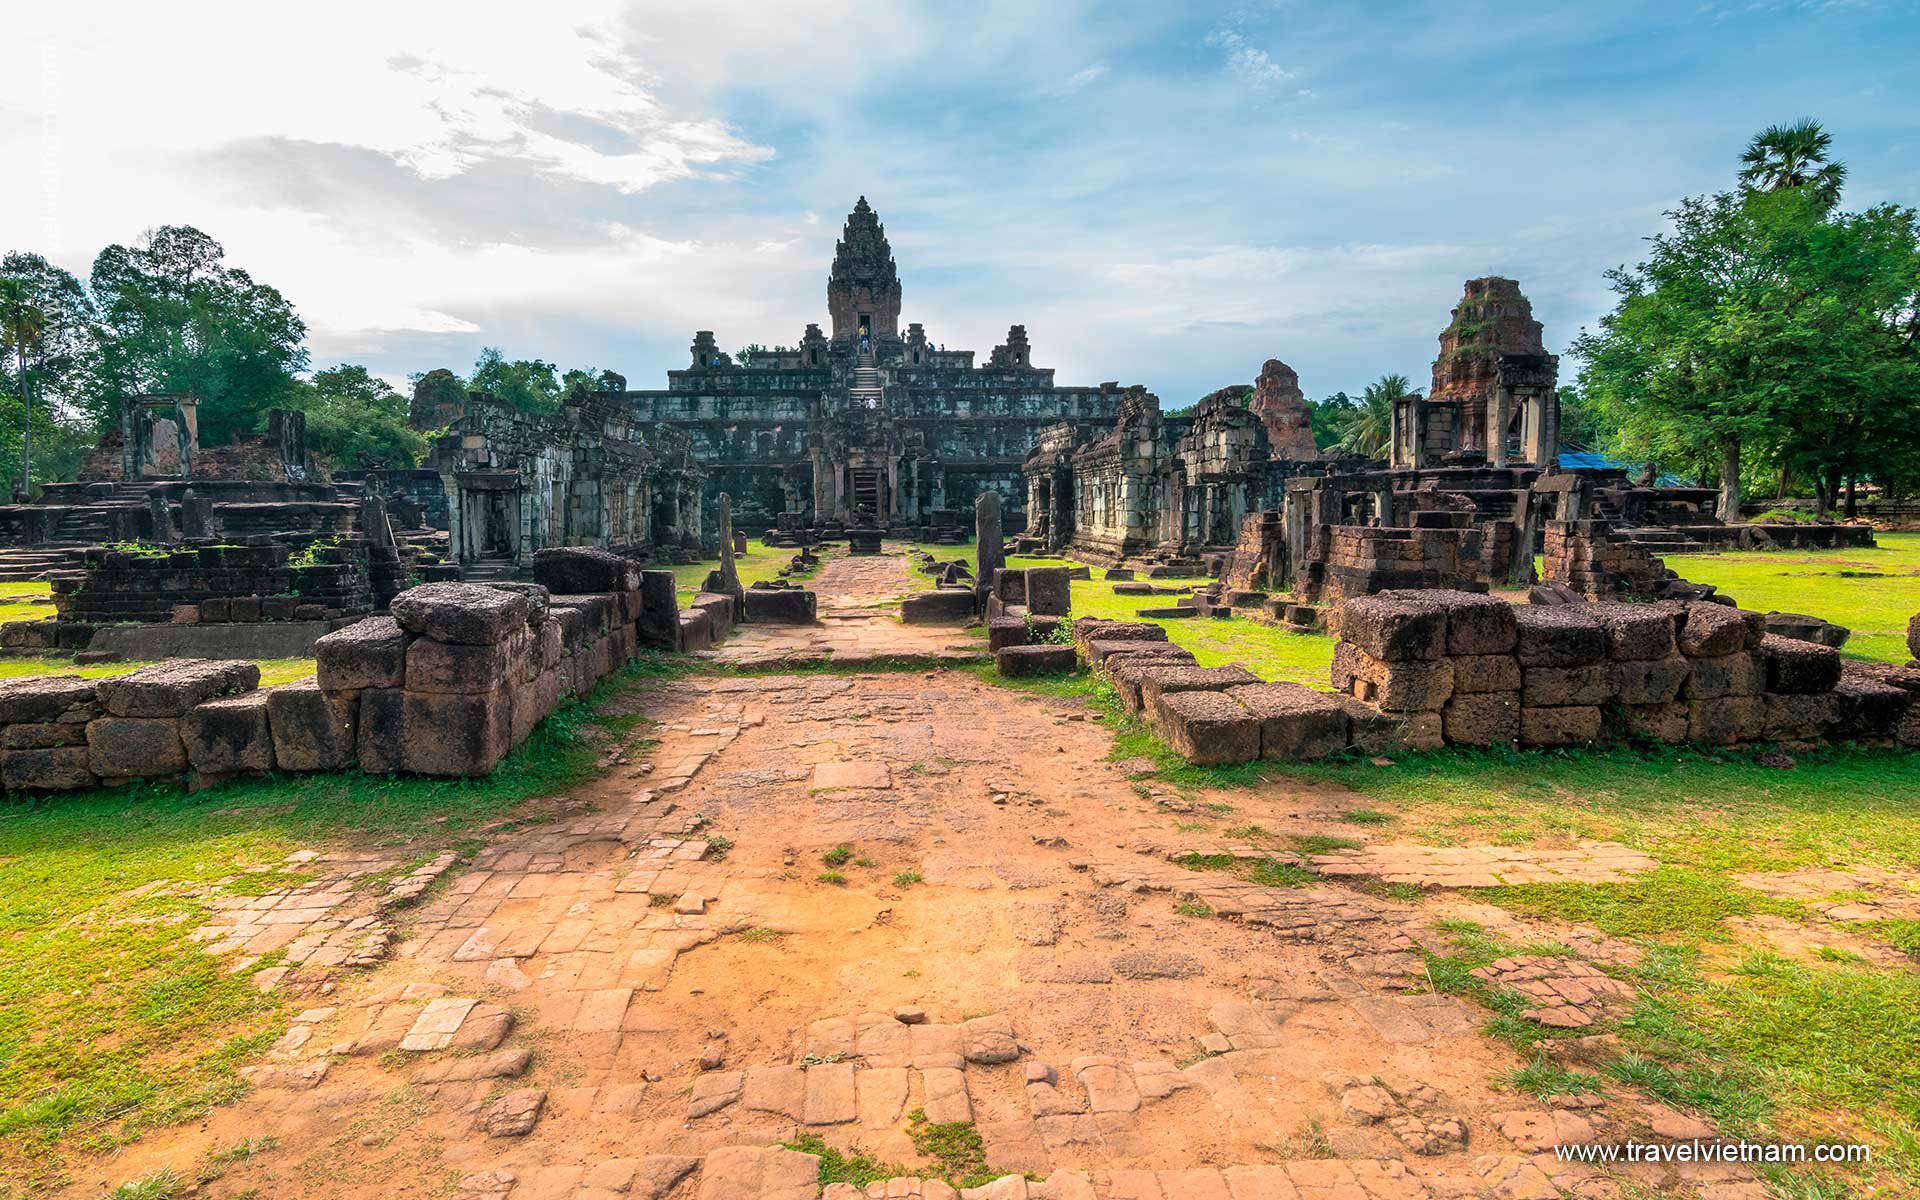 From Halong Bay to Angkor Wat